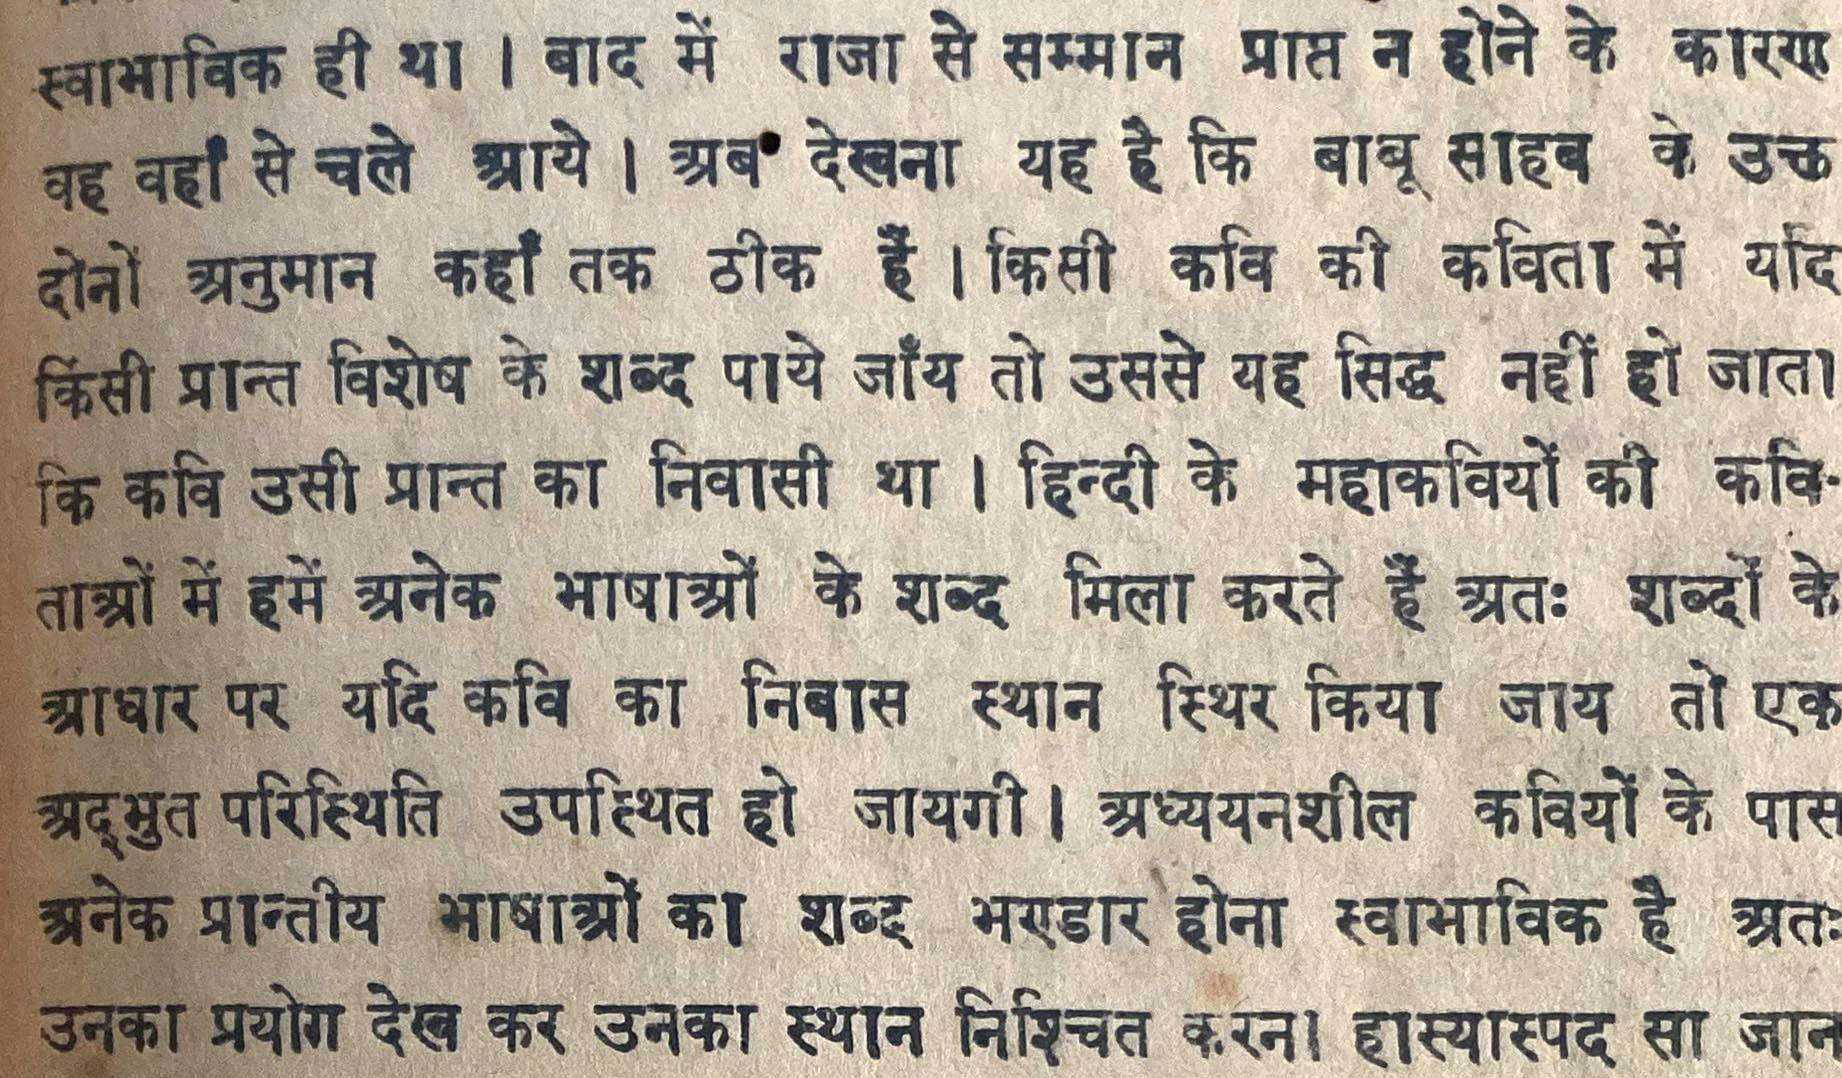 Hindi text printed in Varanasi